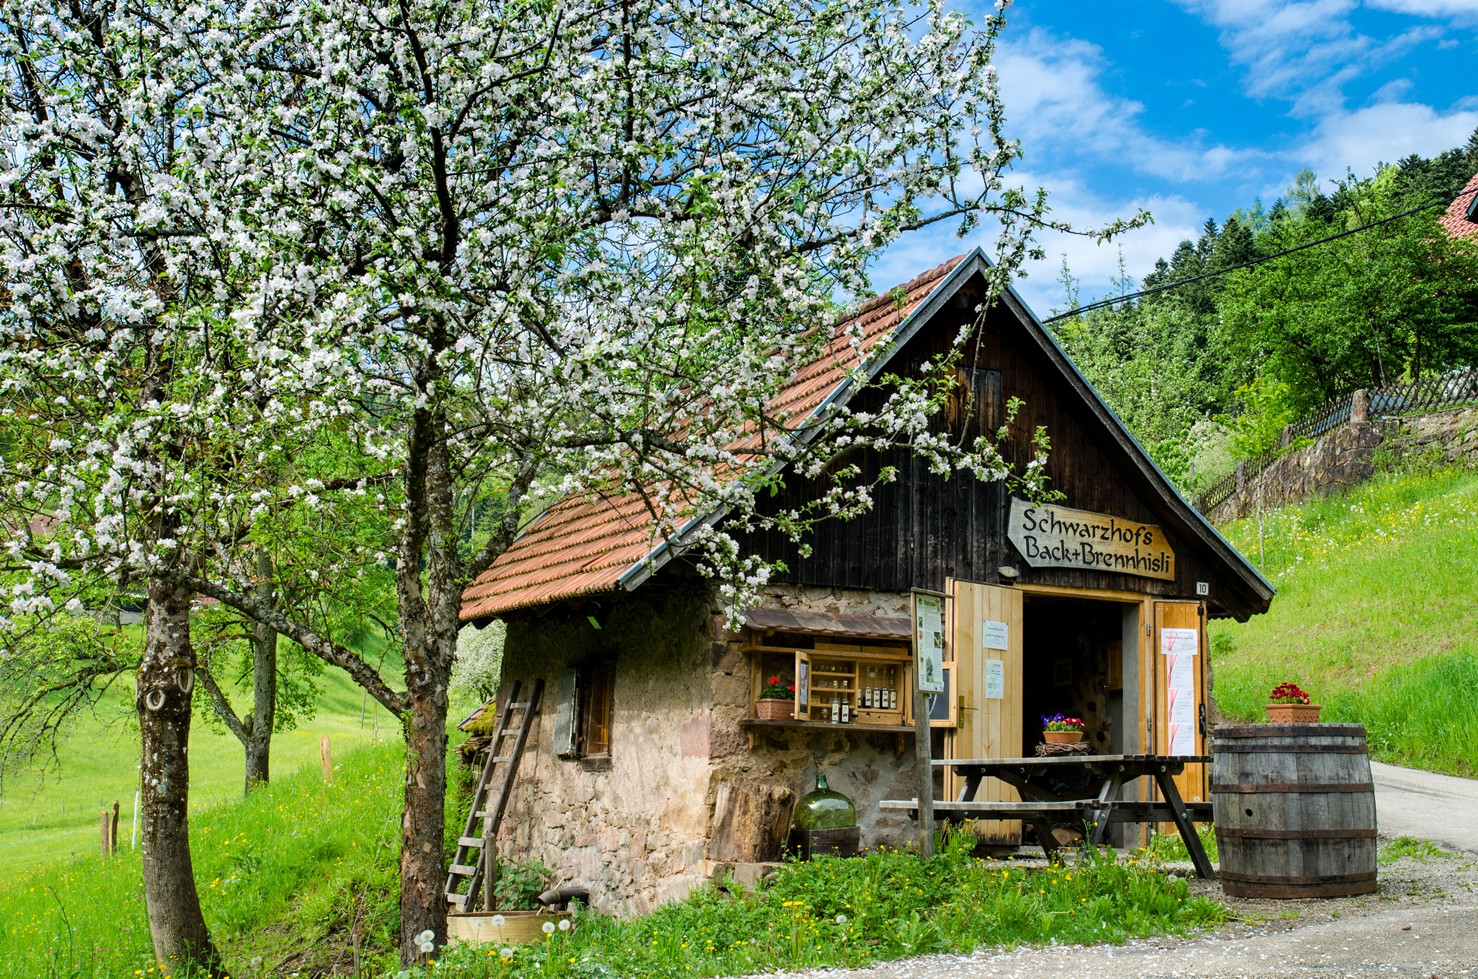 Das idyllisch-urige Brennhisli auf dem Schwarzhof / Urheber: Familie Schwarz, © Familie Schwarz